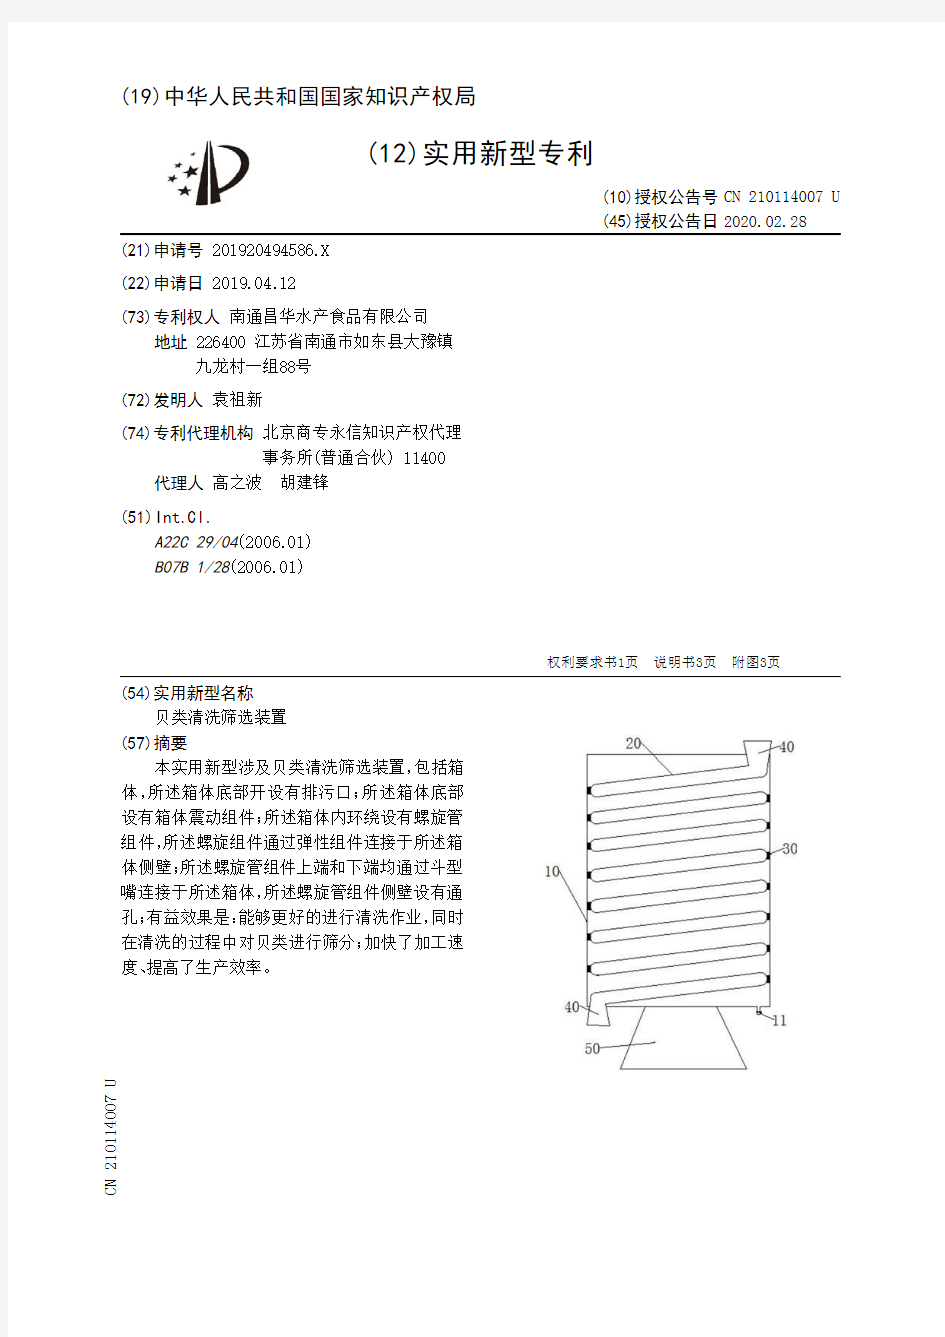 【CN210114007U】贝类清洗筛选装置【专利】